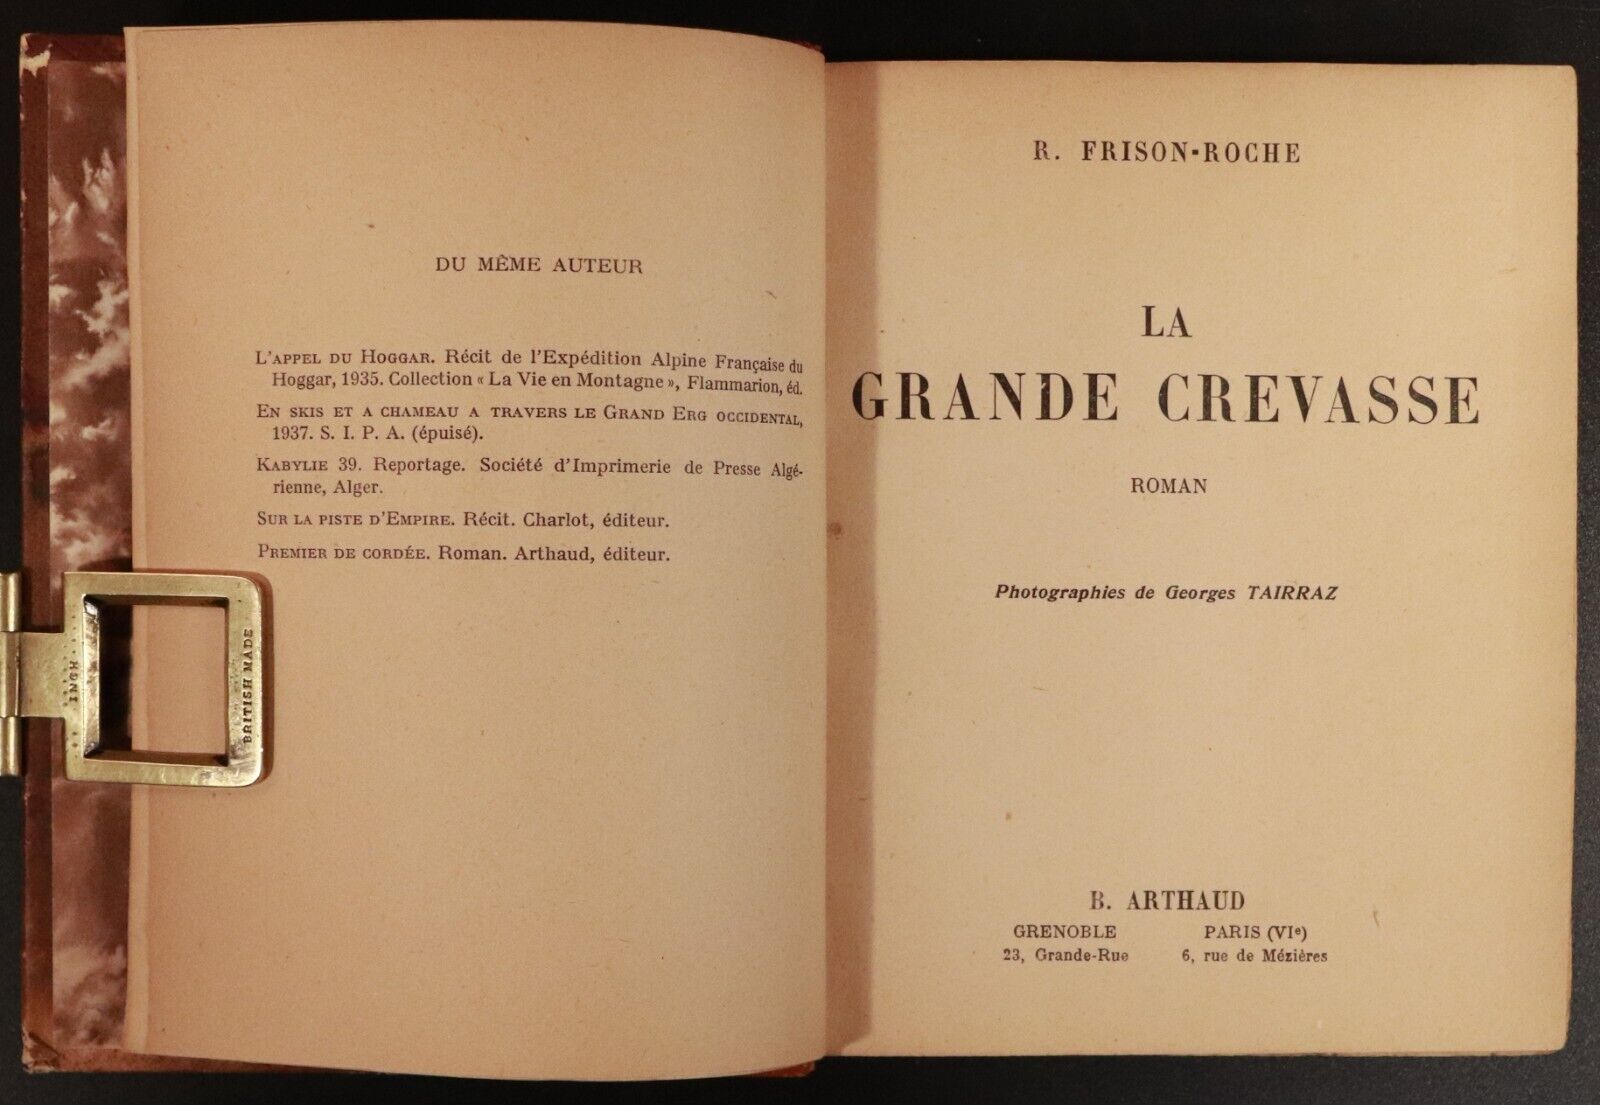 1948 La Grande Crevasse by R Frison Roche French Adventure Book Fine Binding